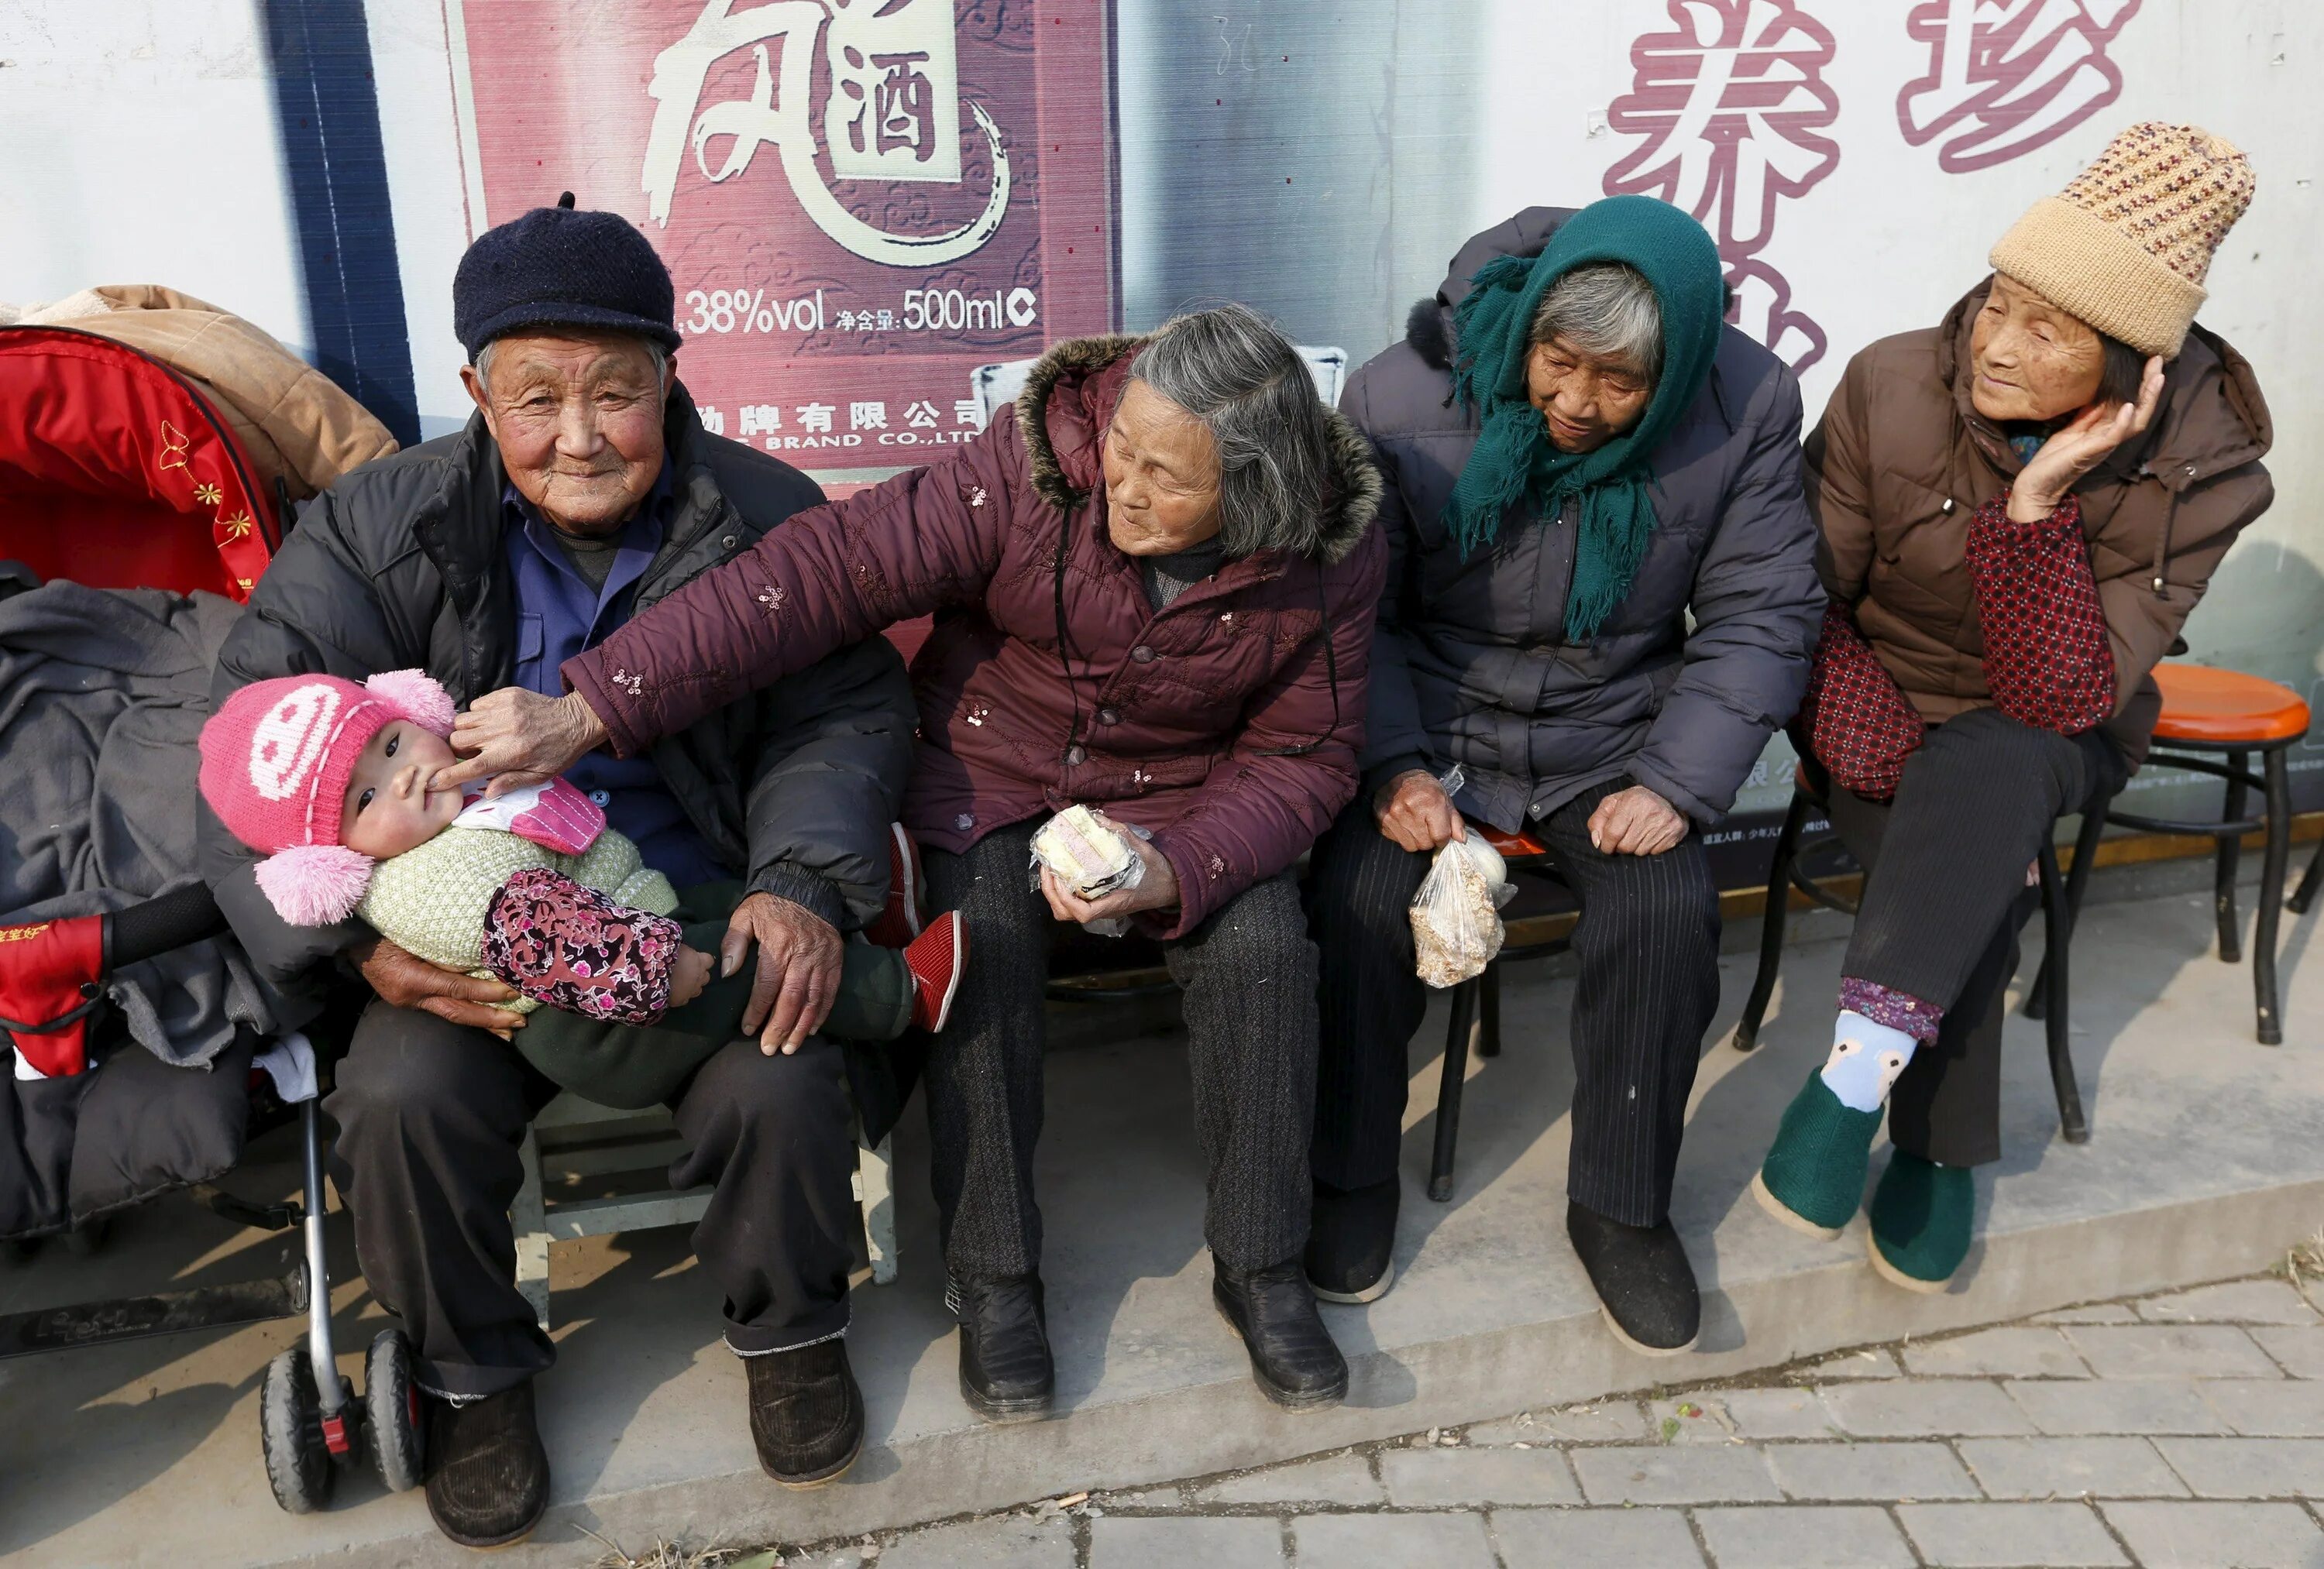 Людей проживает в китае. Обычная жизнь в Китае. Жизнь китайцев. Жизнь людей в Китае. Китайцы в повседневной жизни.